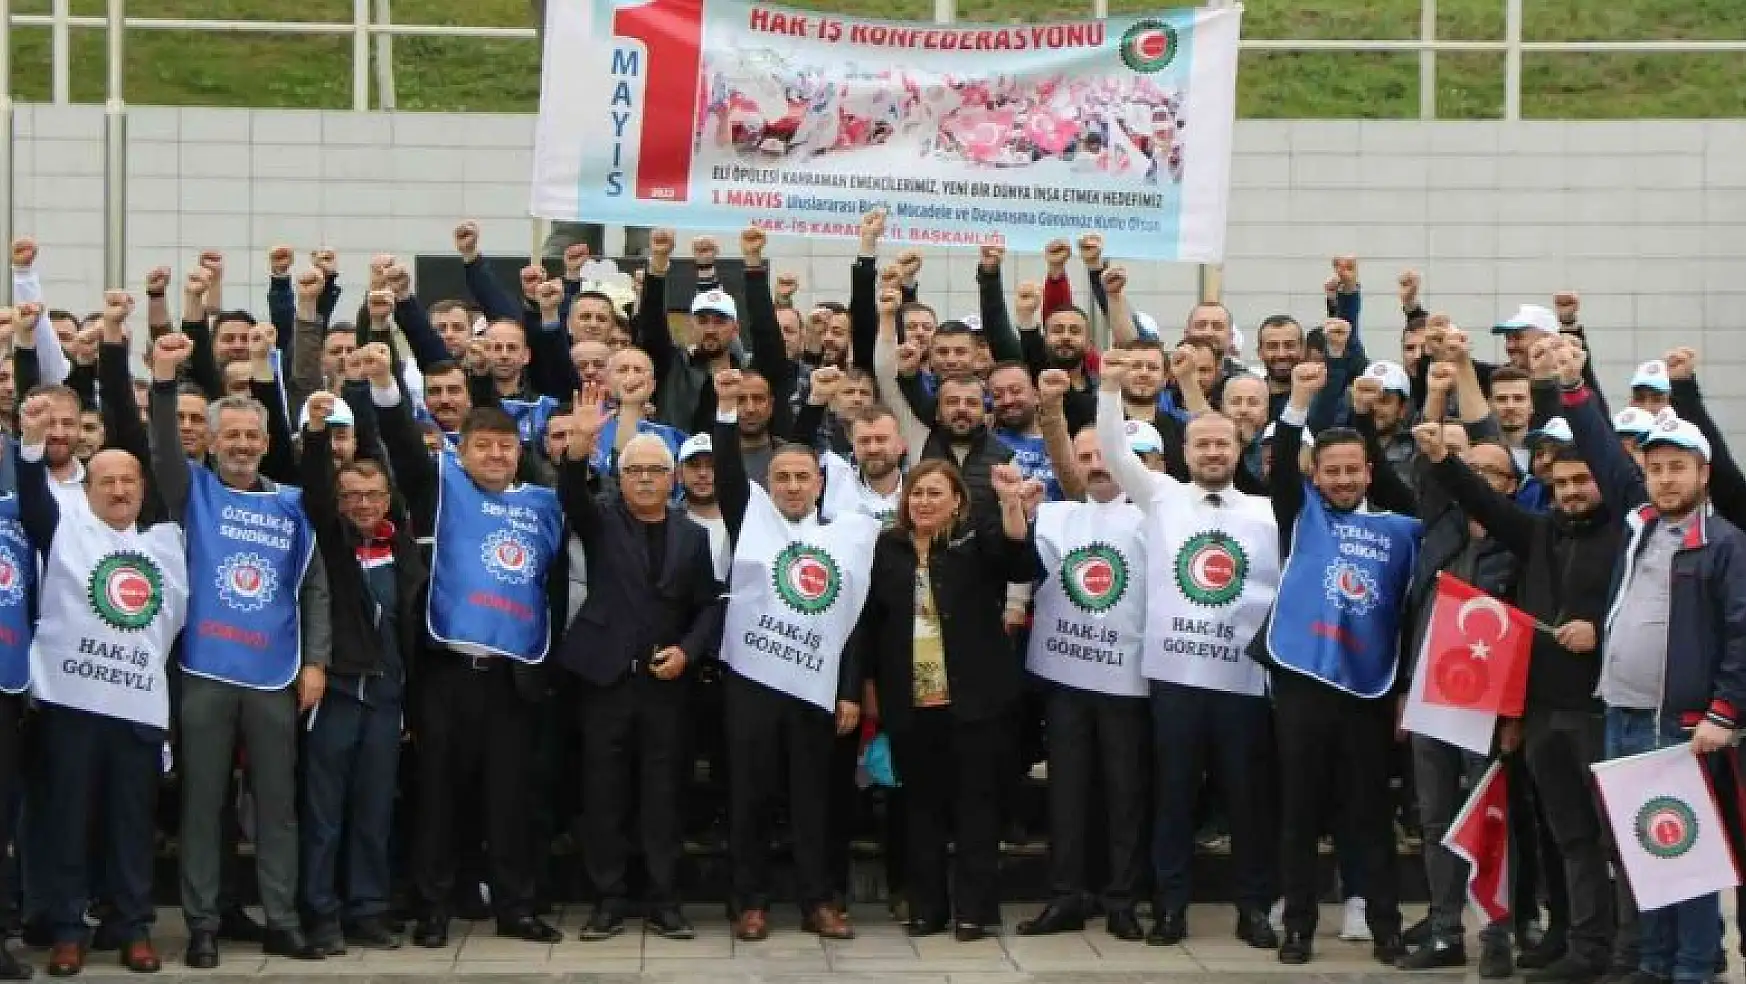 Karabük'te Hak-İş üyeleri 1 Mayıs'ta taleplerini açıkladı